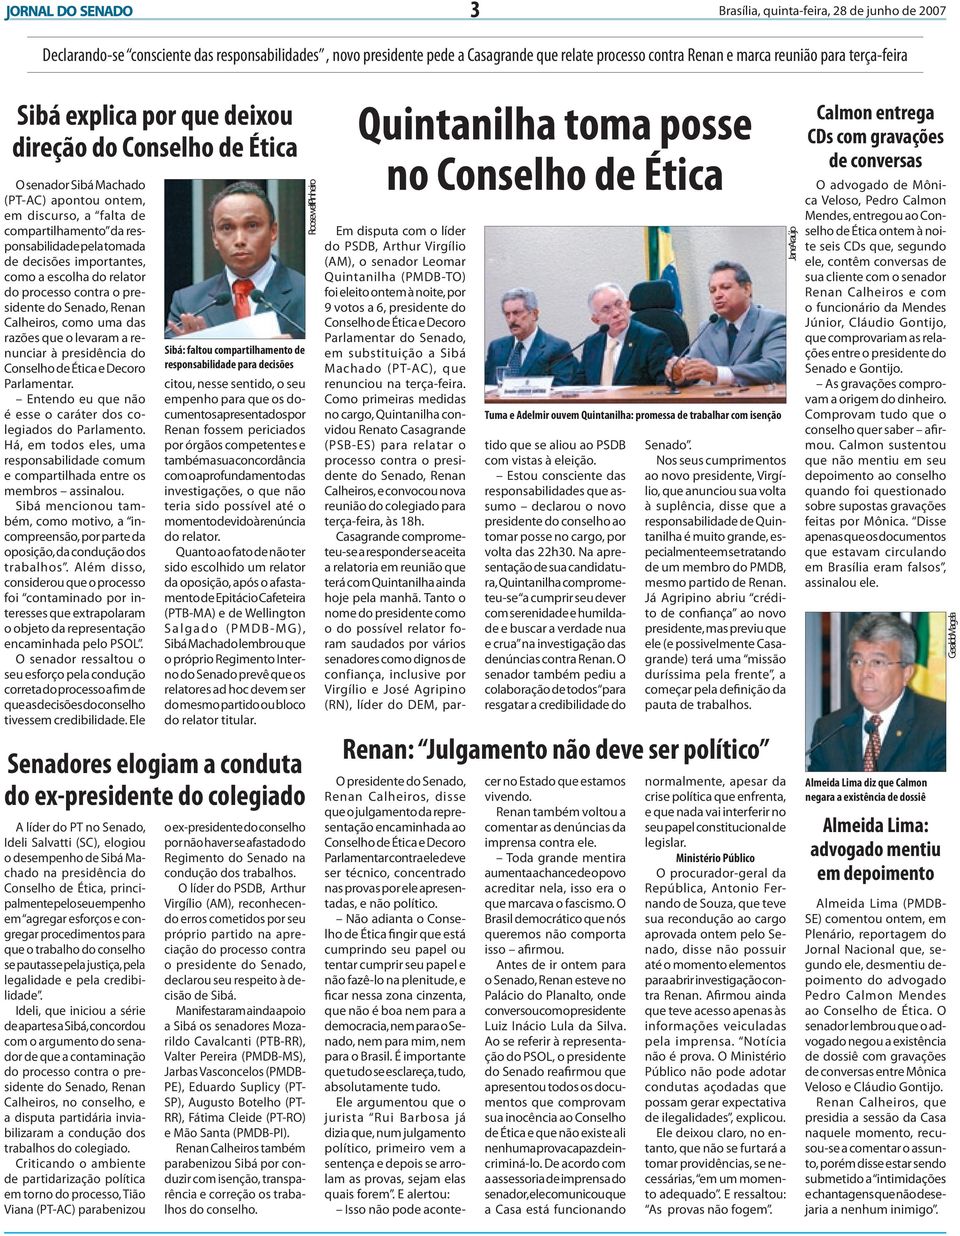 como a escolha do relator do processo contra o presidente do Senado, Renan Calheiros, como uma das razões que o levaram a renunciar à presidência do Conselho de Ética e Decoro Parlamentar.